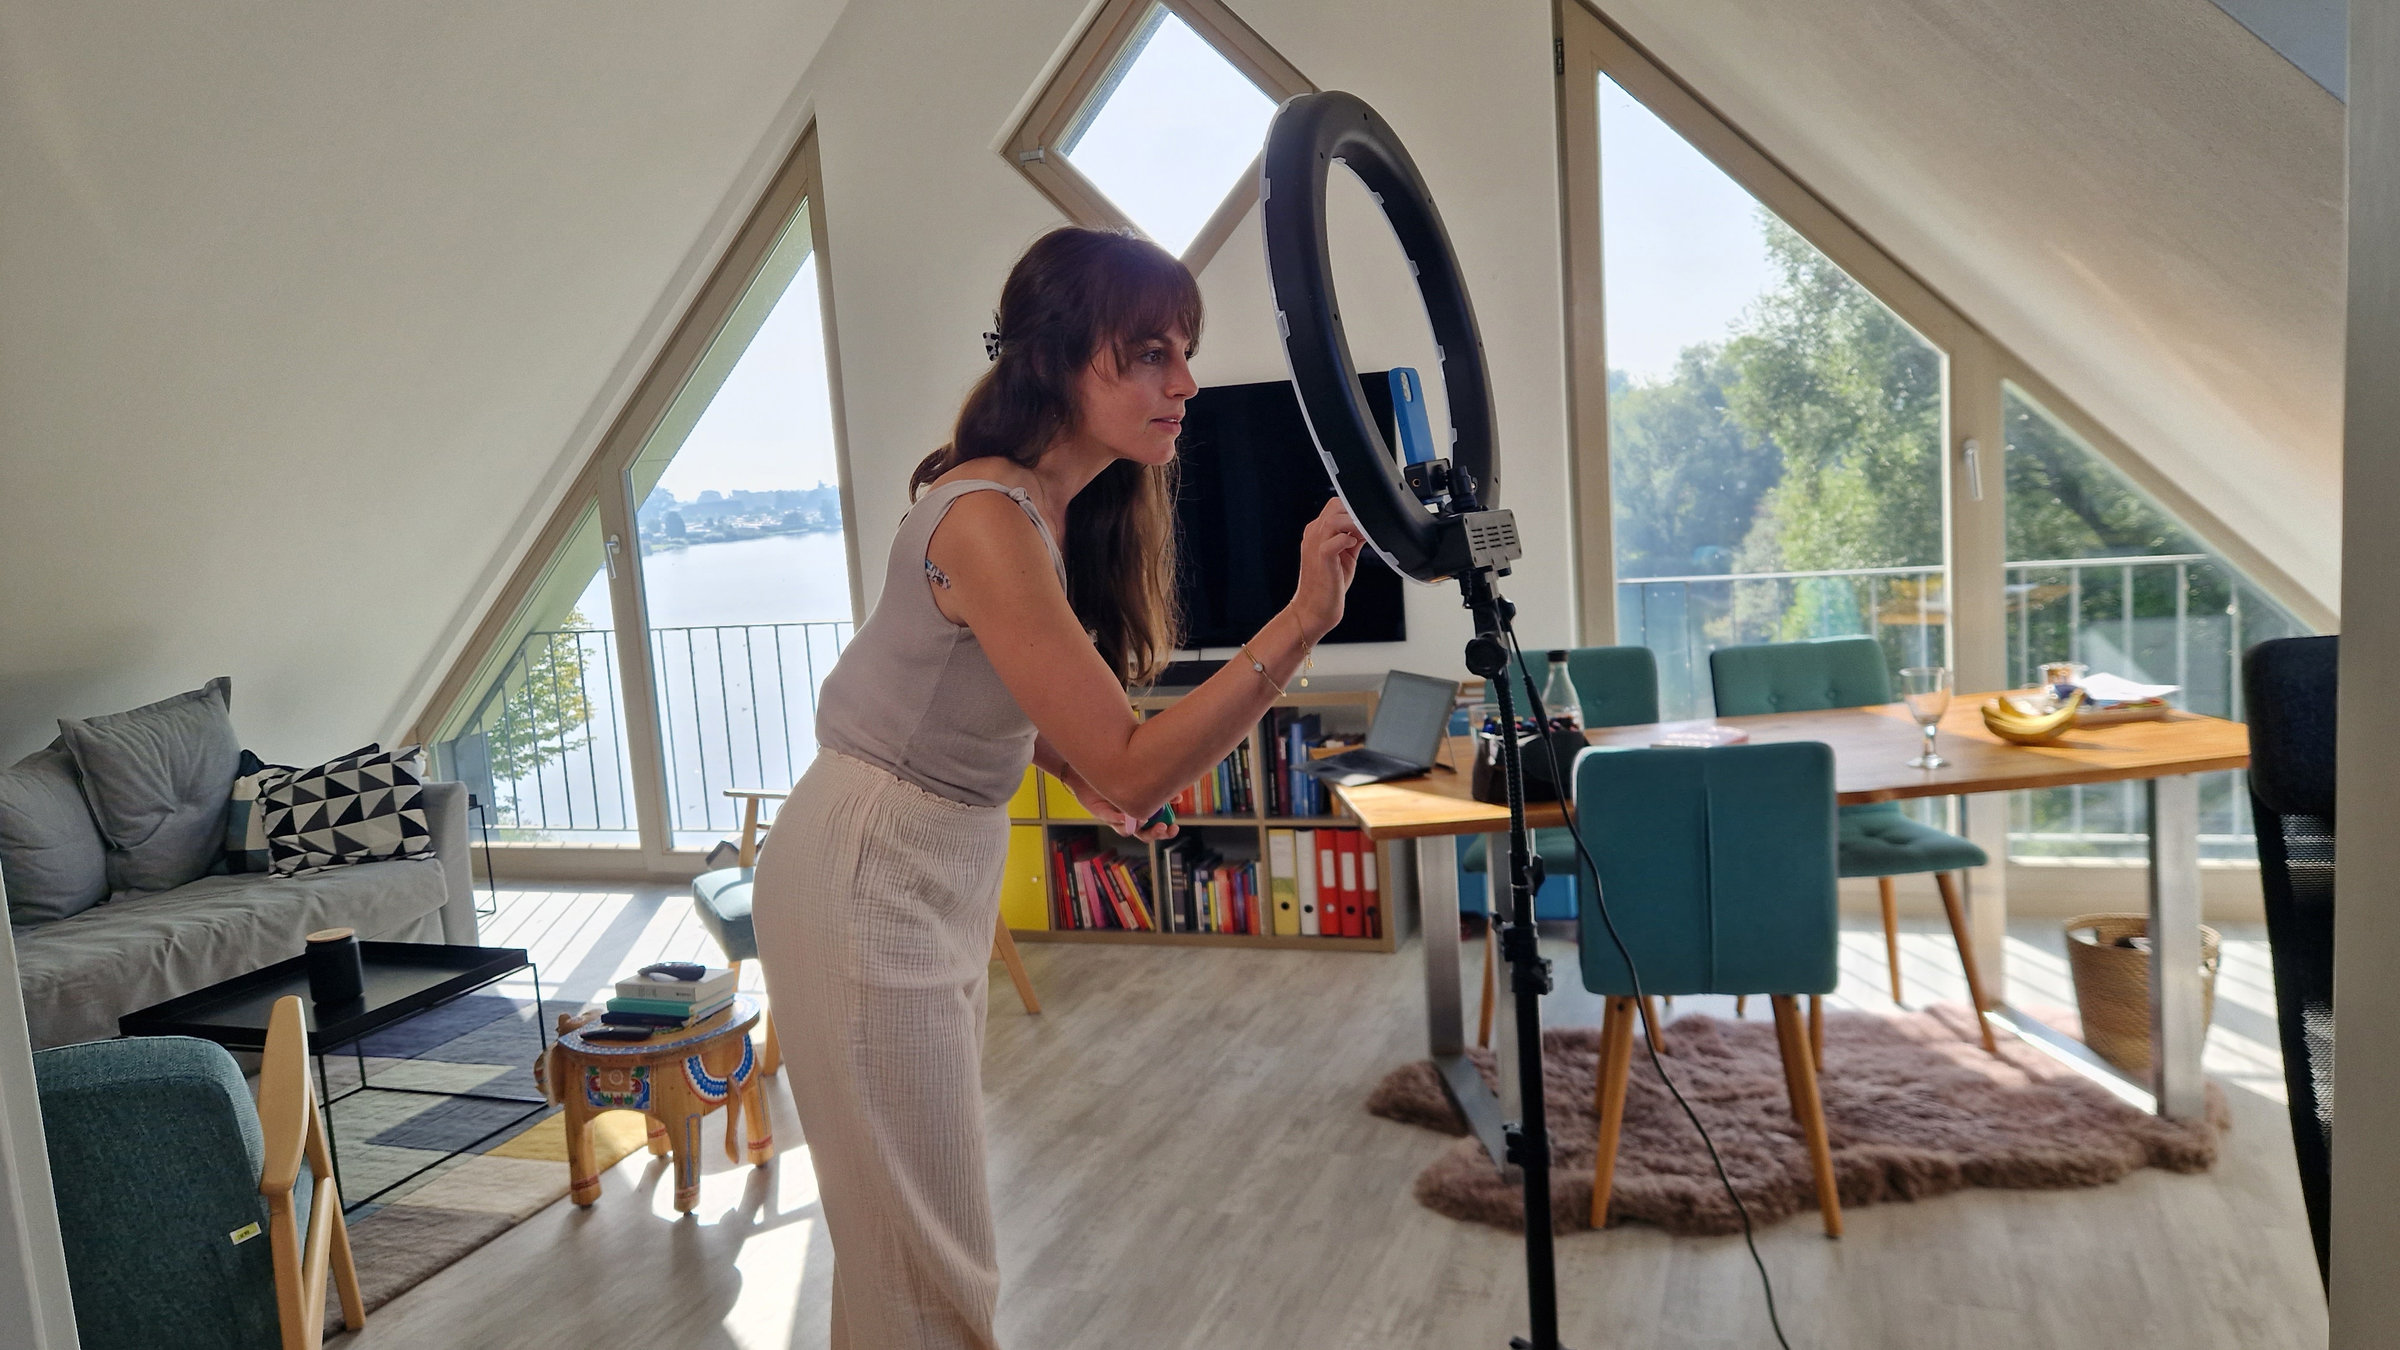 "ZDF.reportage: TikTok erklärt die Welt - Gestern tabu, heute online": Gianna Bacio steht bei der Produktion eines TikTok-Videos in einem hellen Dachzimmer vor einer Kamera.